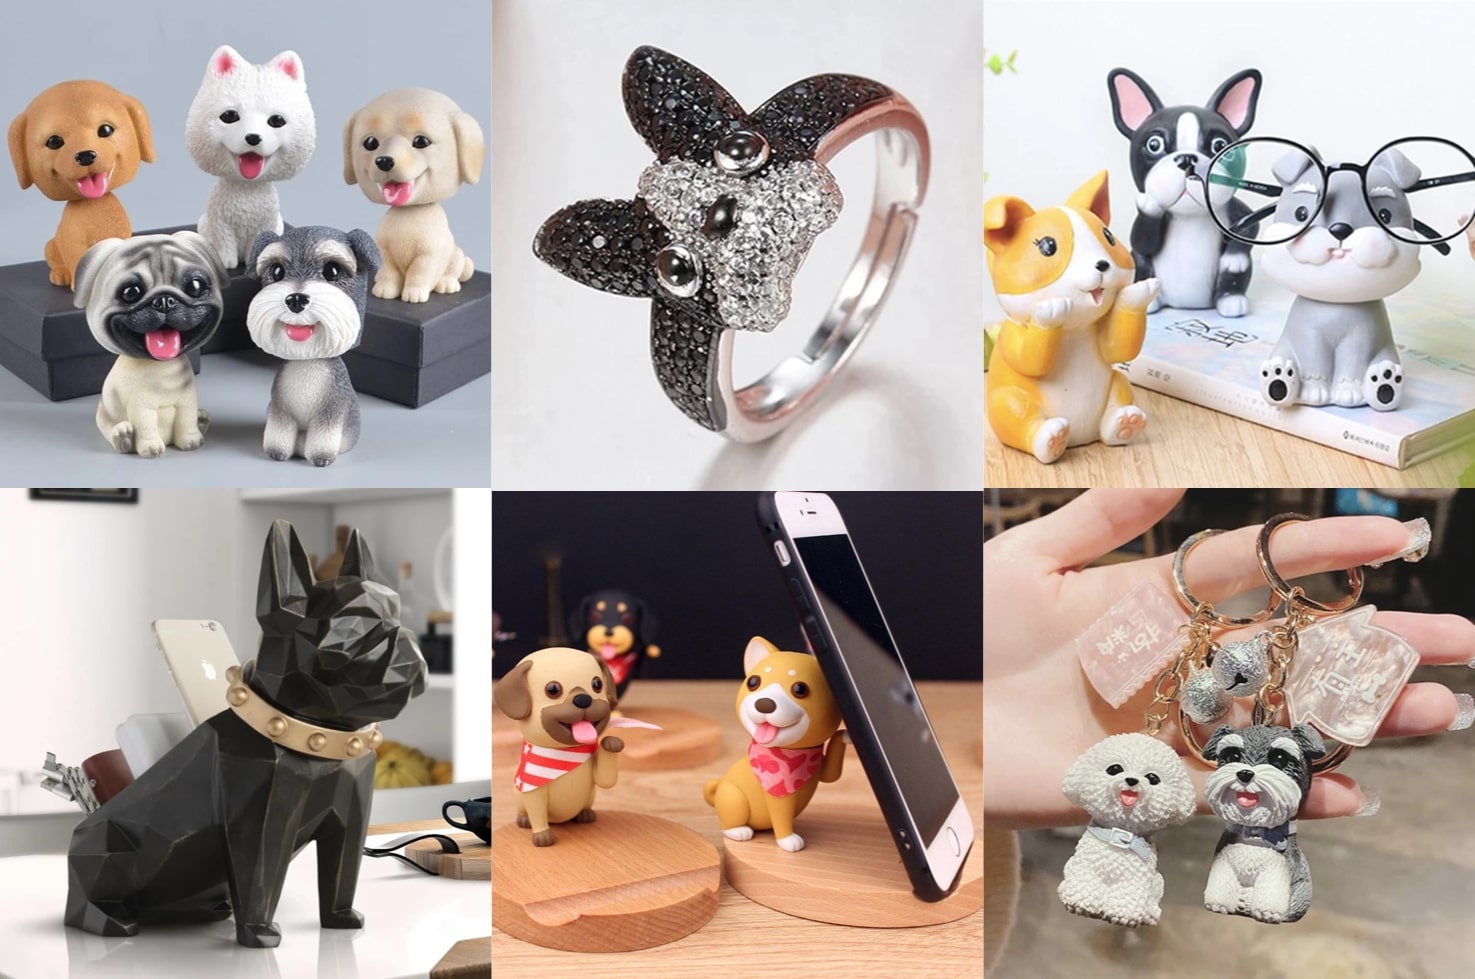 Happy Bobble Head Akita Dog Figurine Ornament Home Car Decor PET Lover Gift